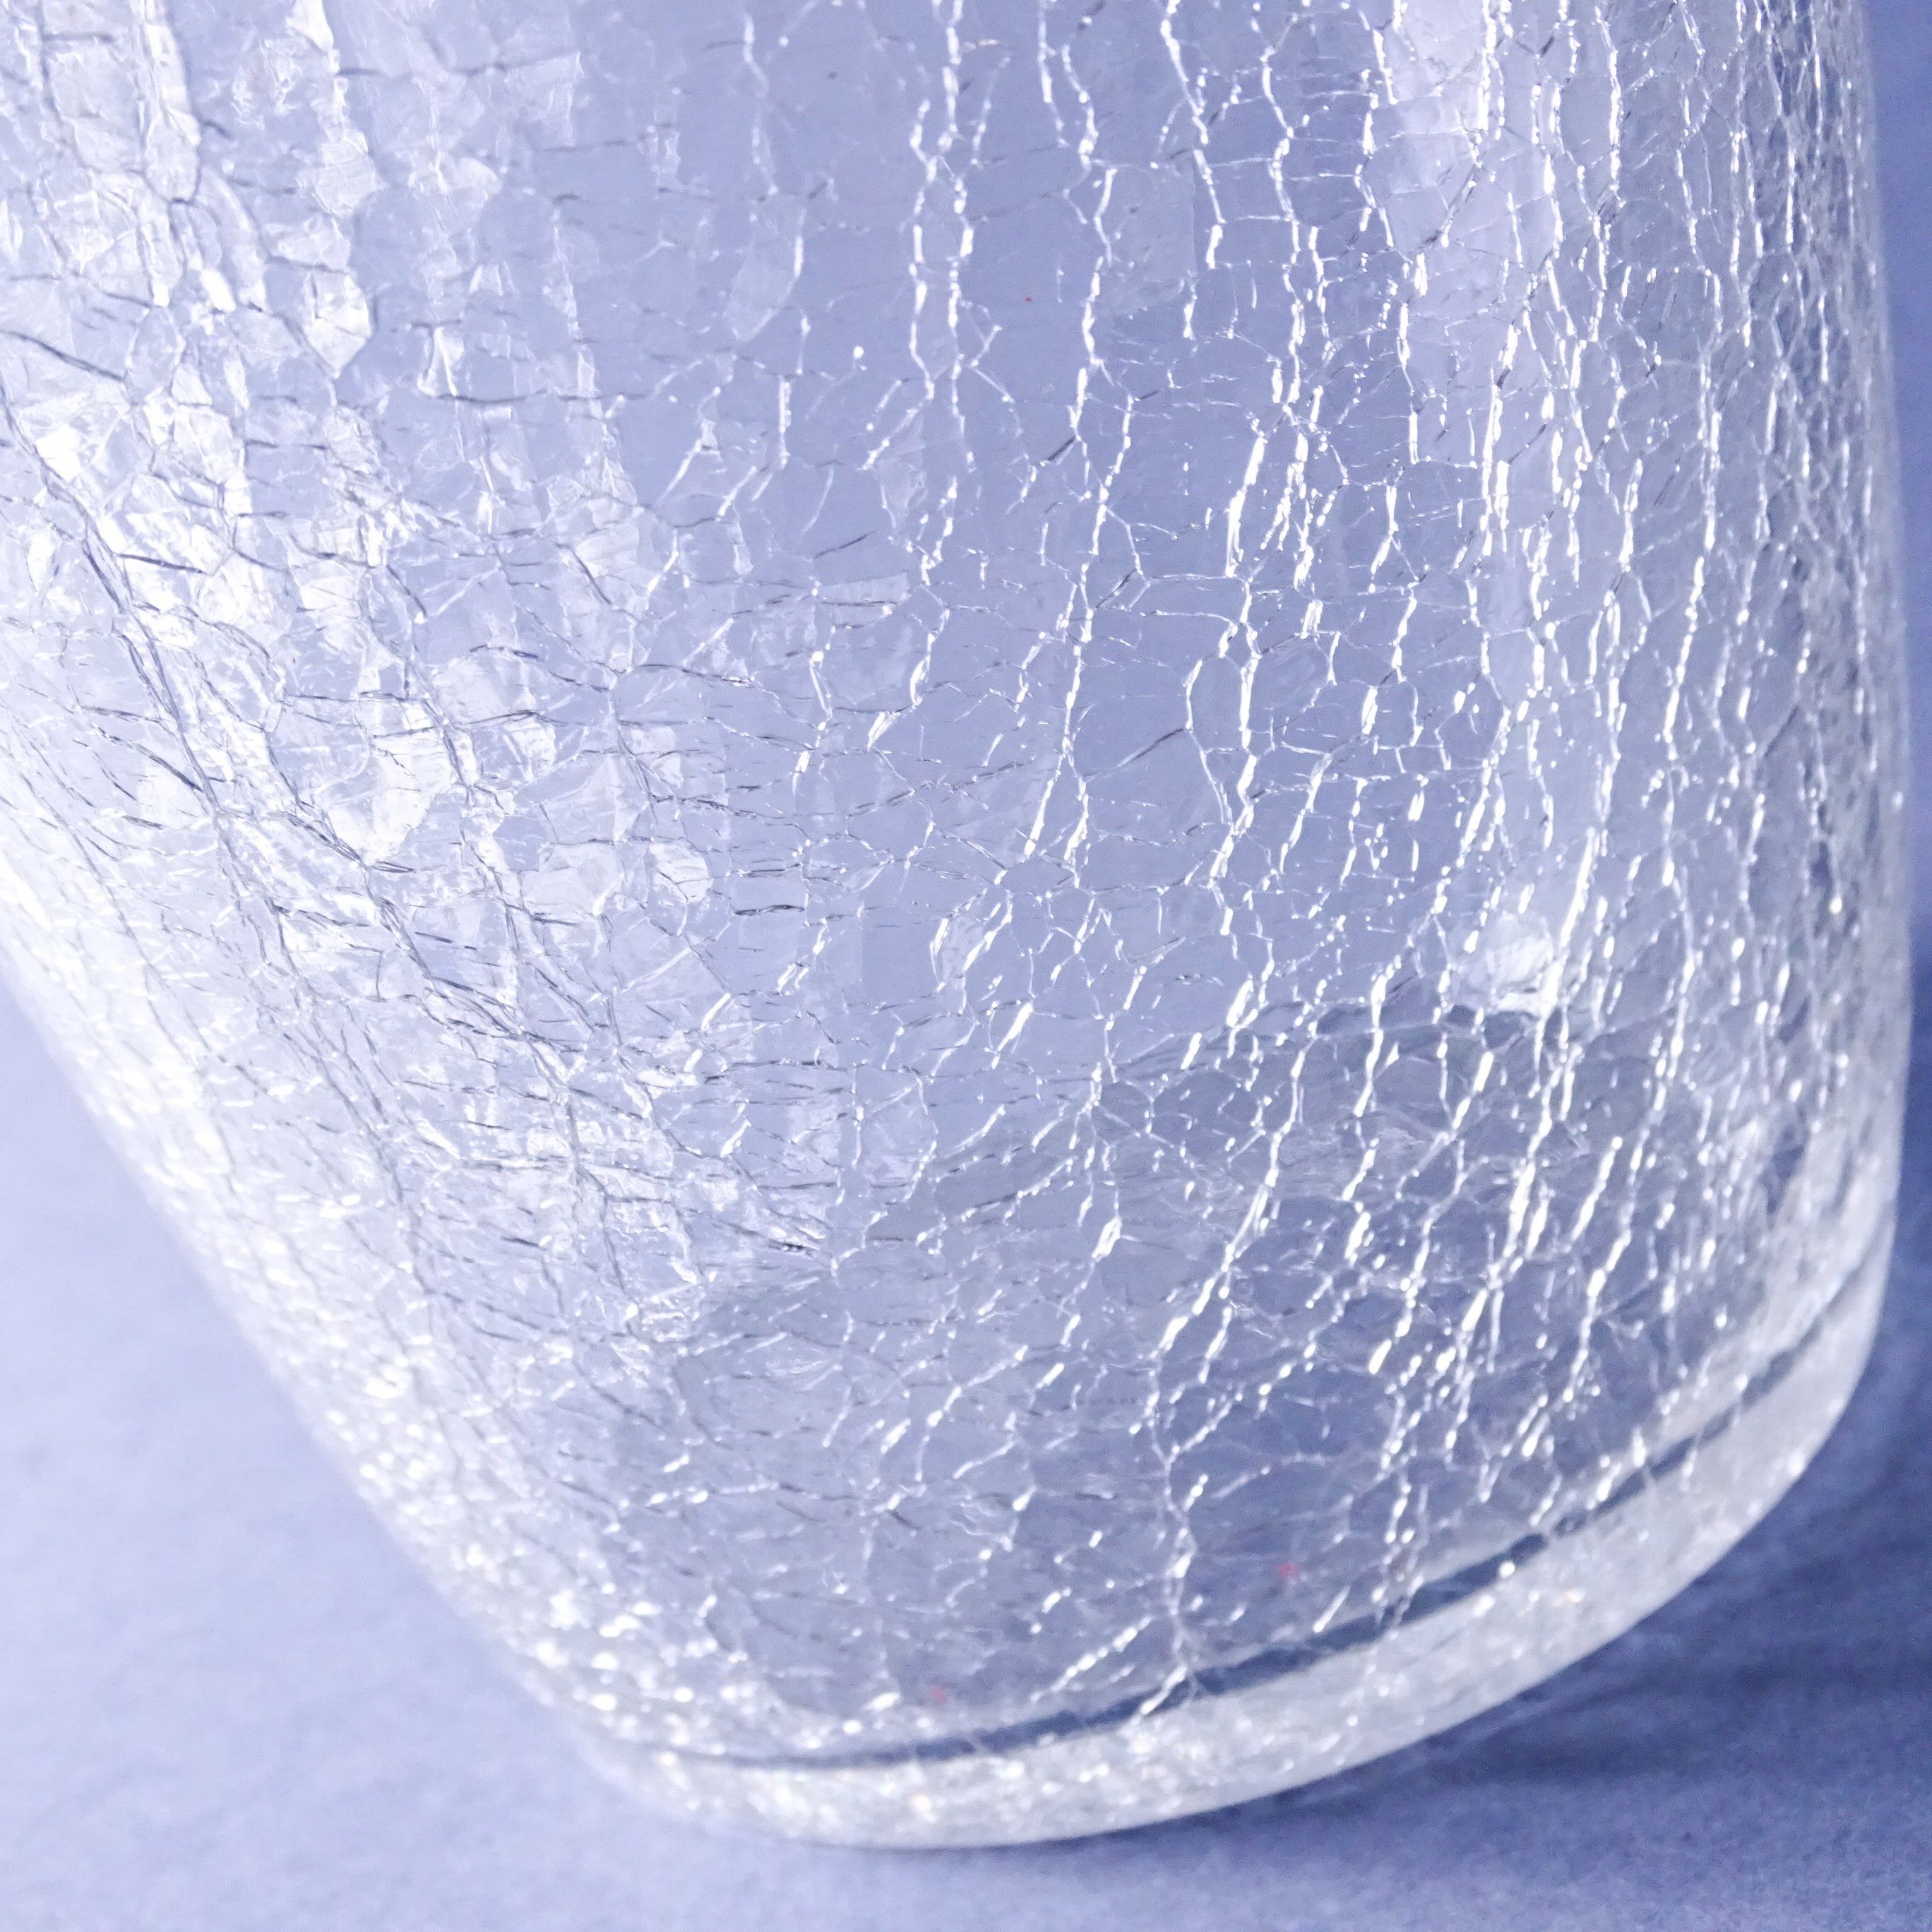 krakelura szkło lodowe lata 60-te piękne wiaderko na lód